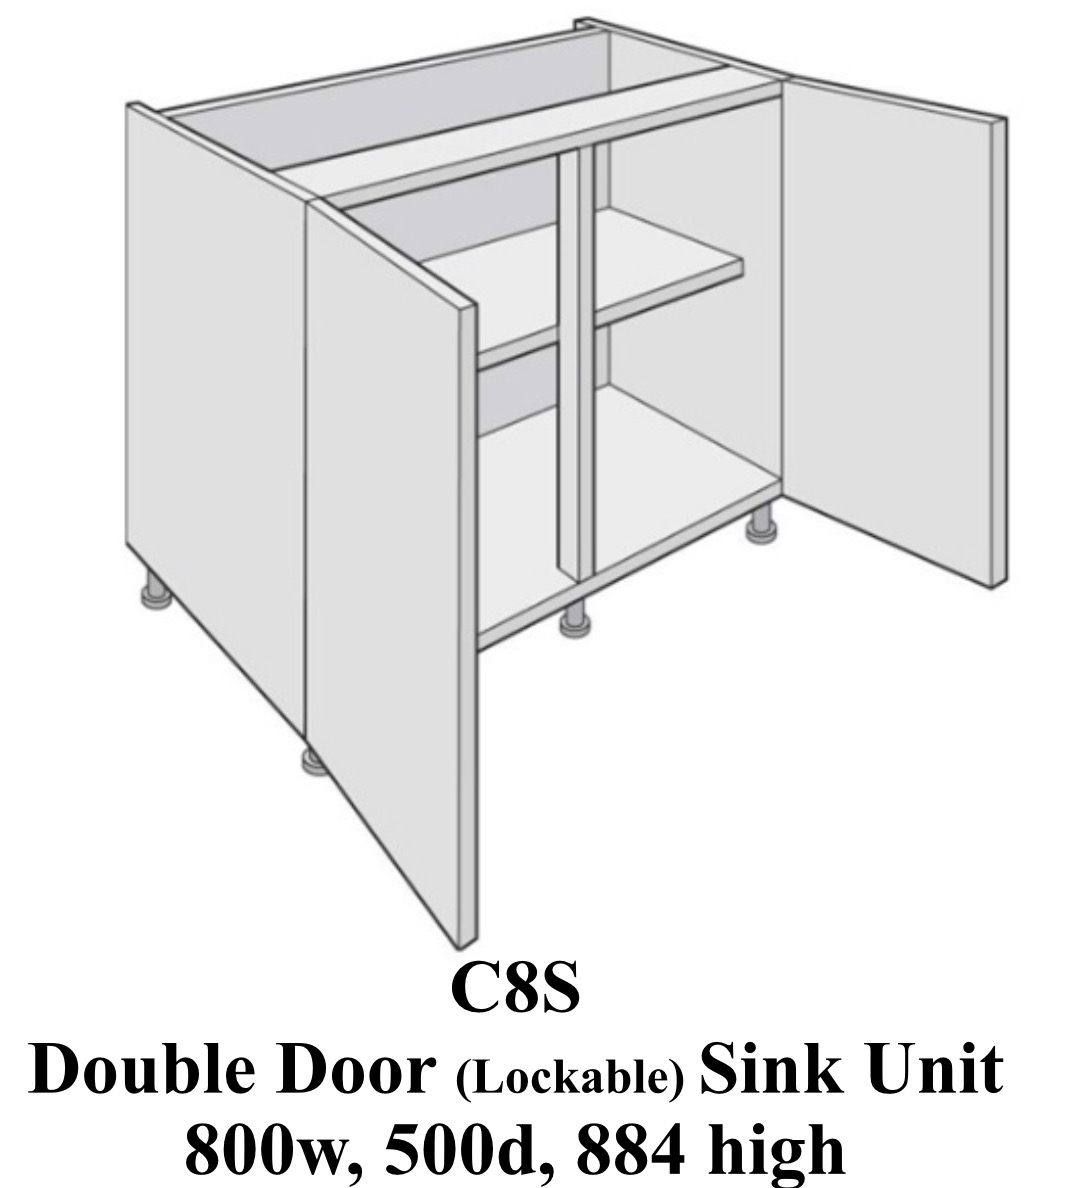 Single door laboratory classroom sink cabinet  800 wide